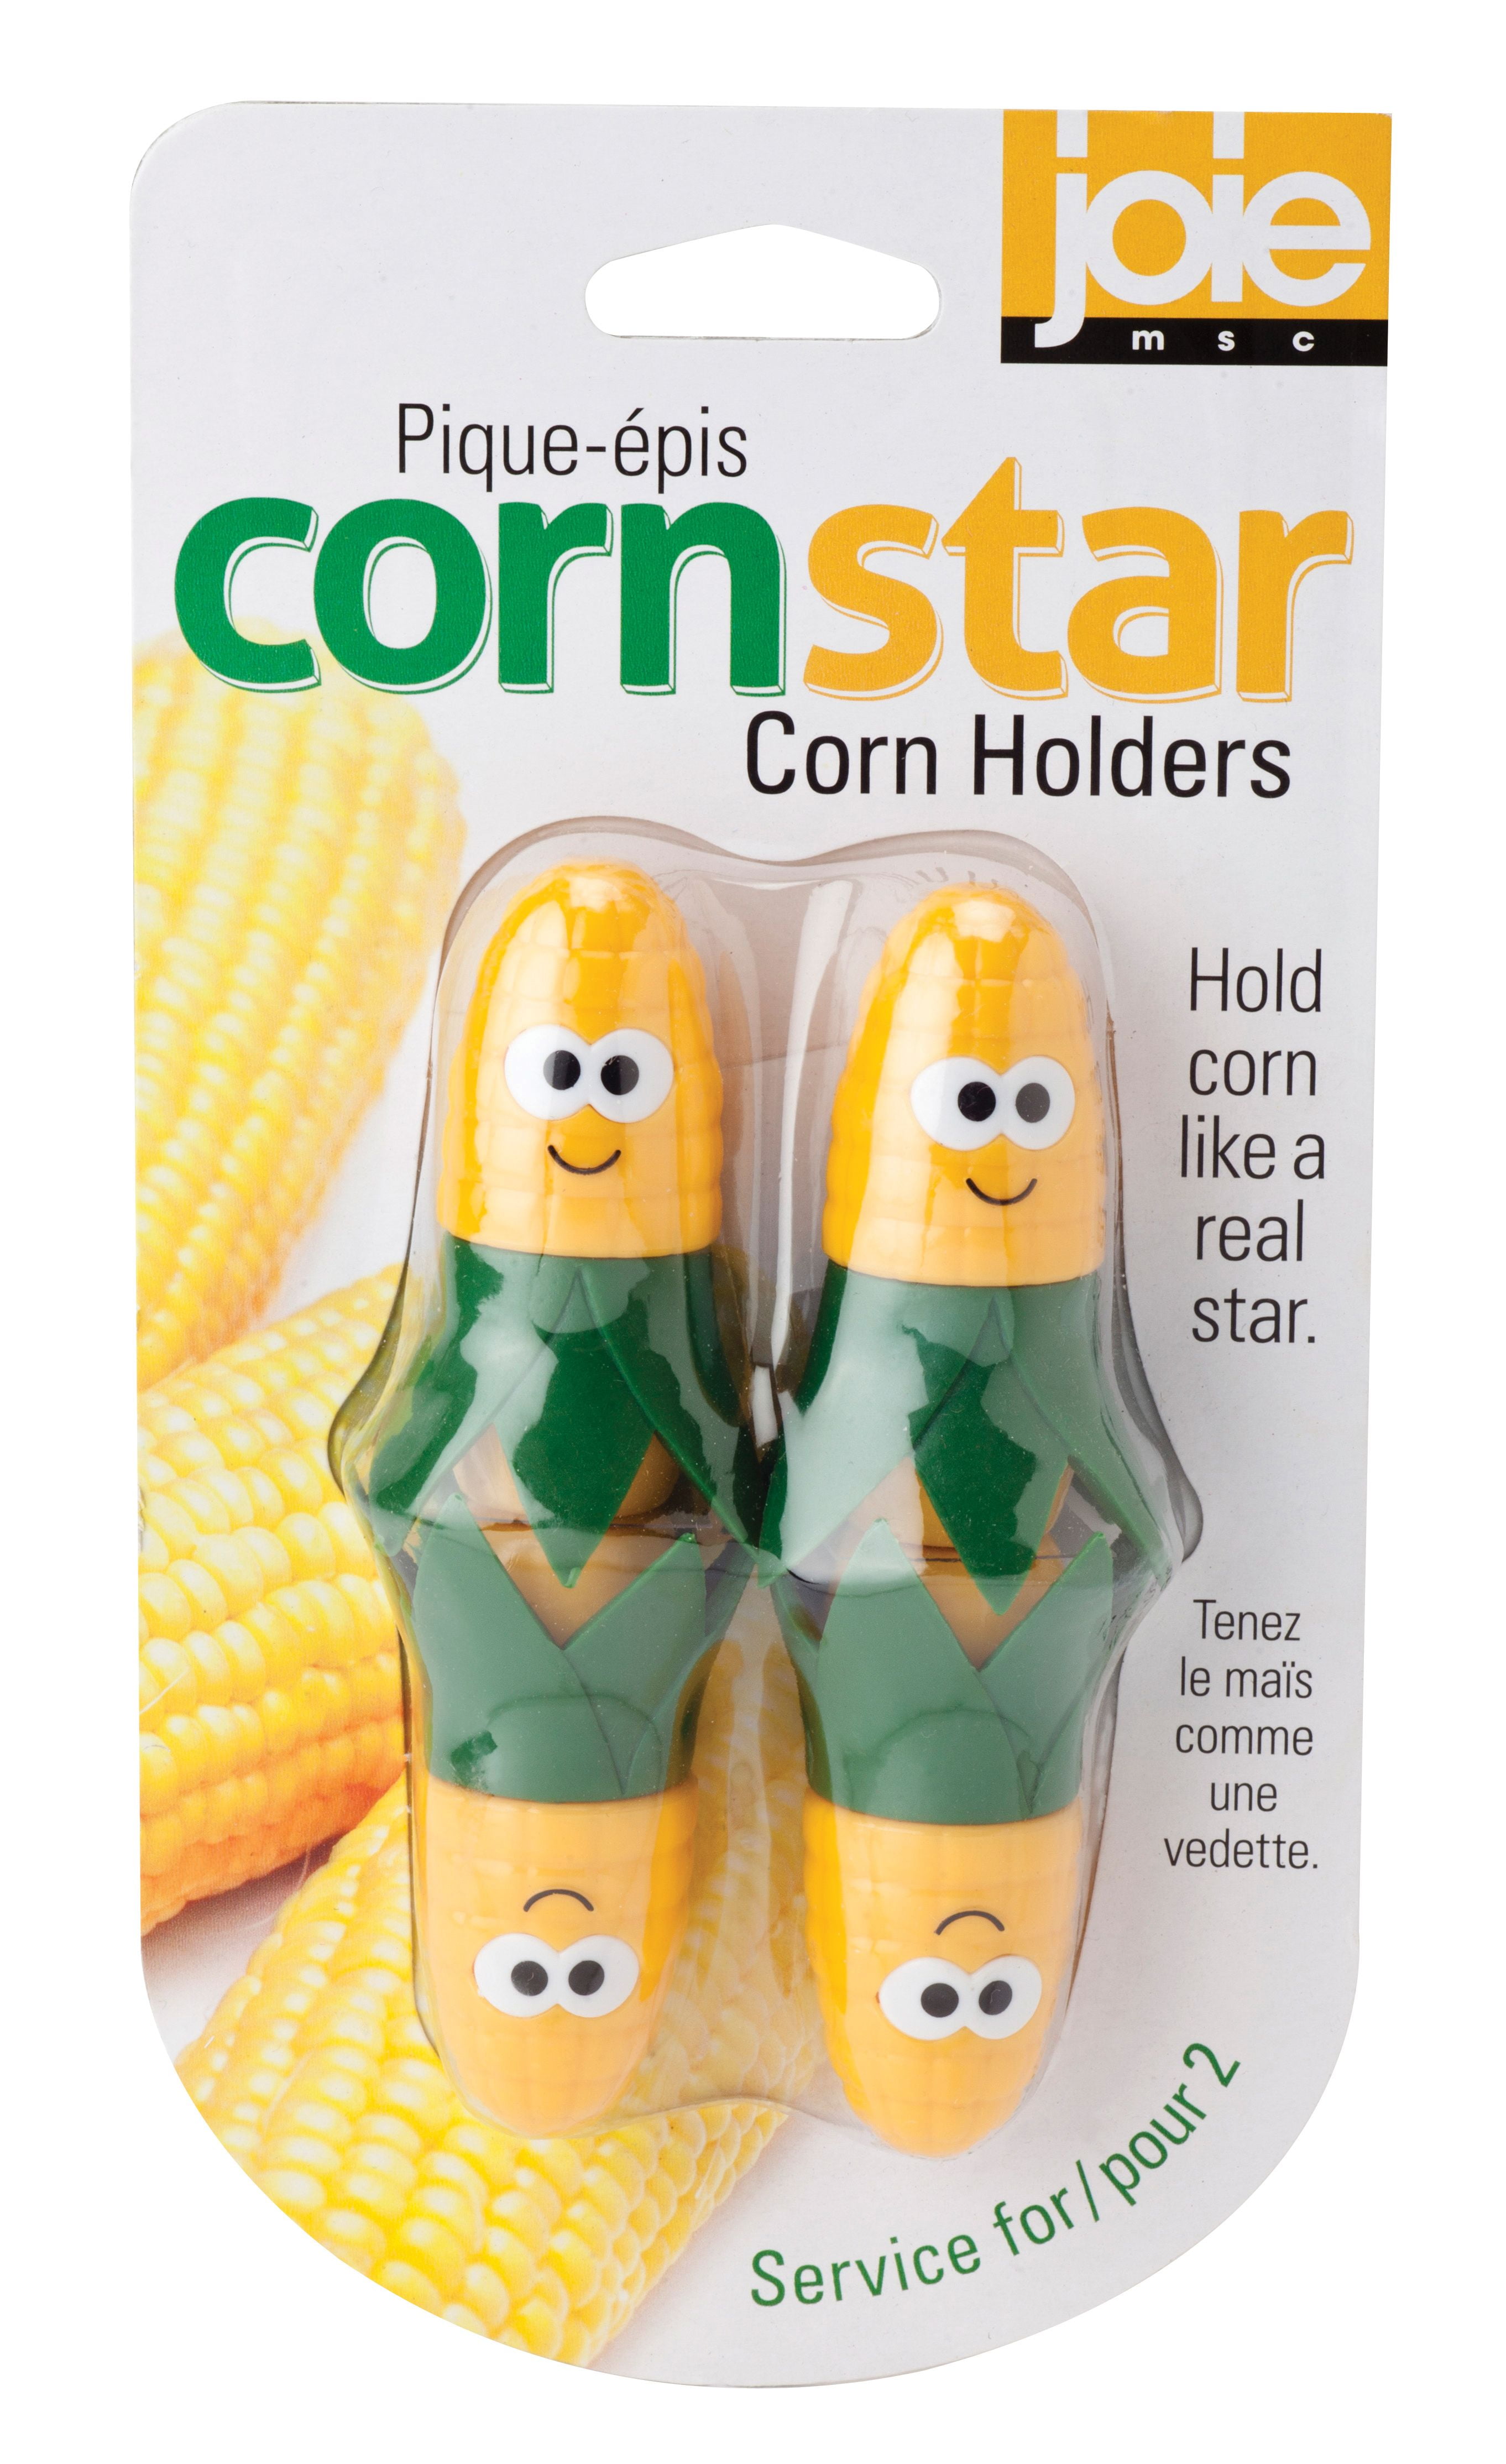 Yellow Joie Corn Star Interlocking Corn on the Cob Holders 2 pairs 4 corn picks 